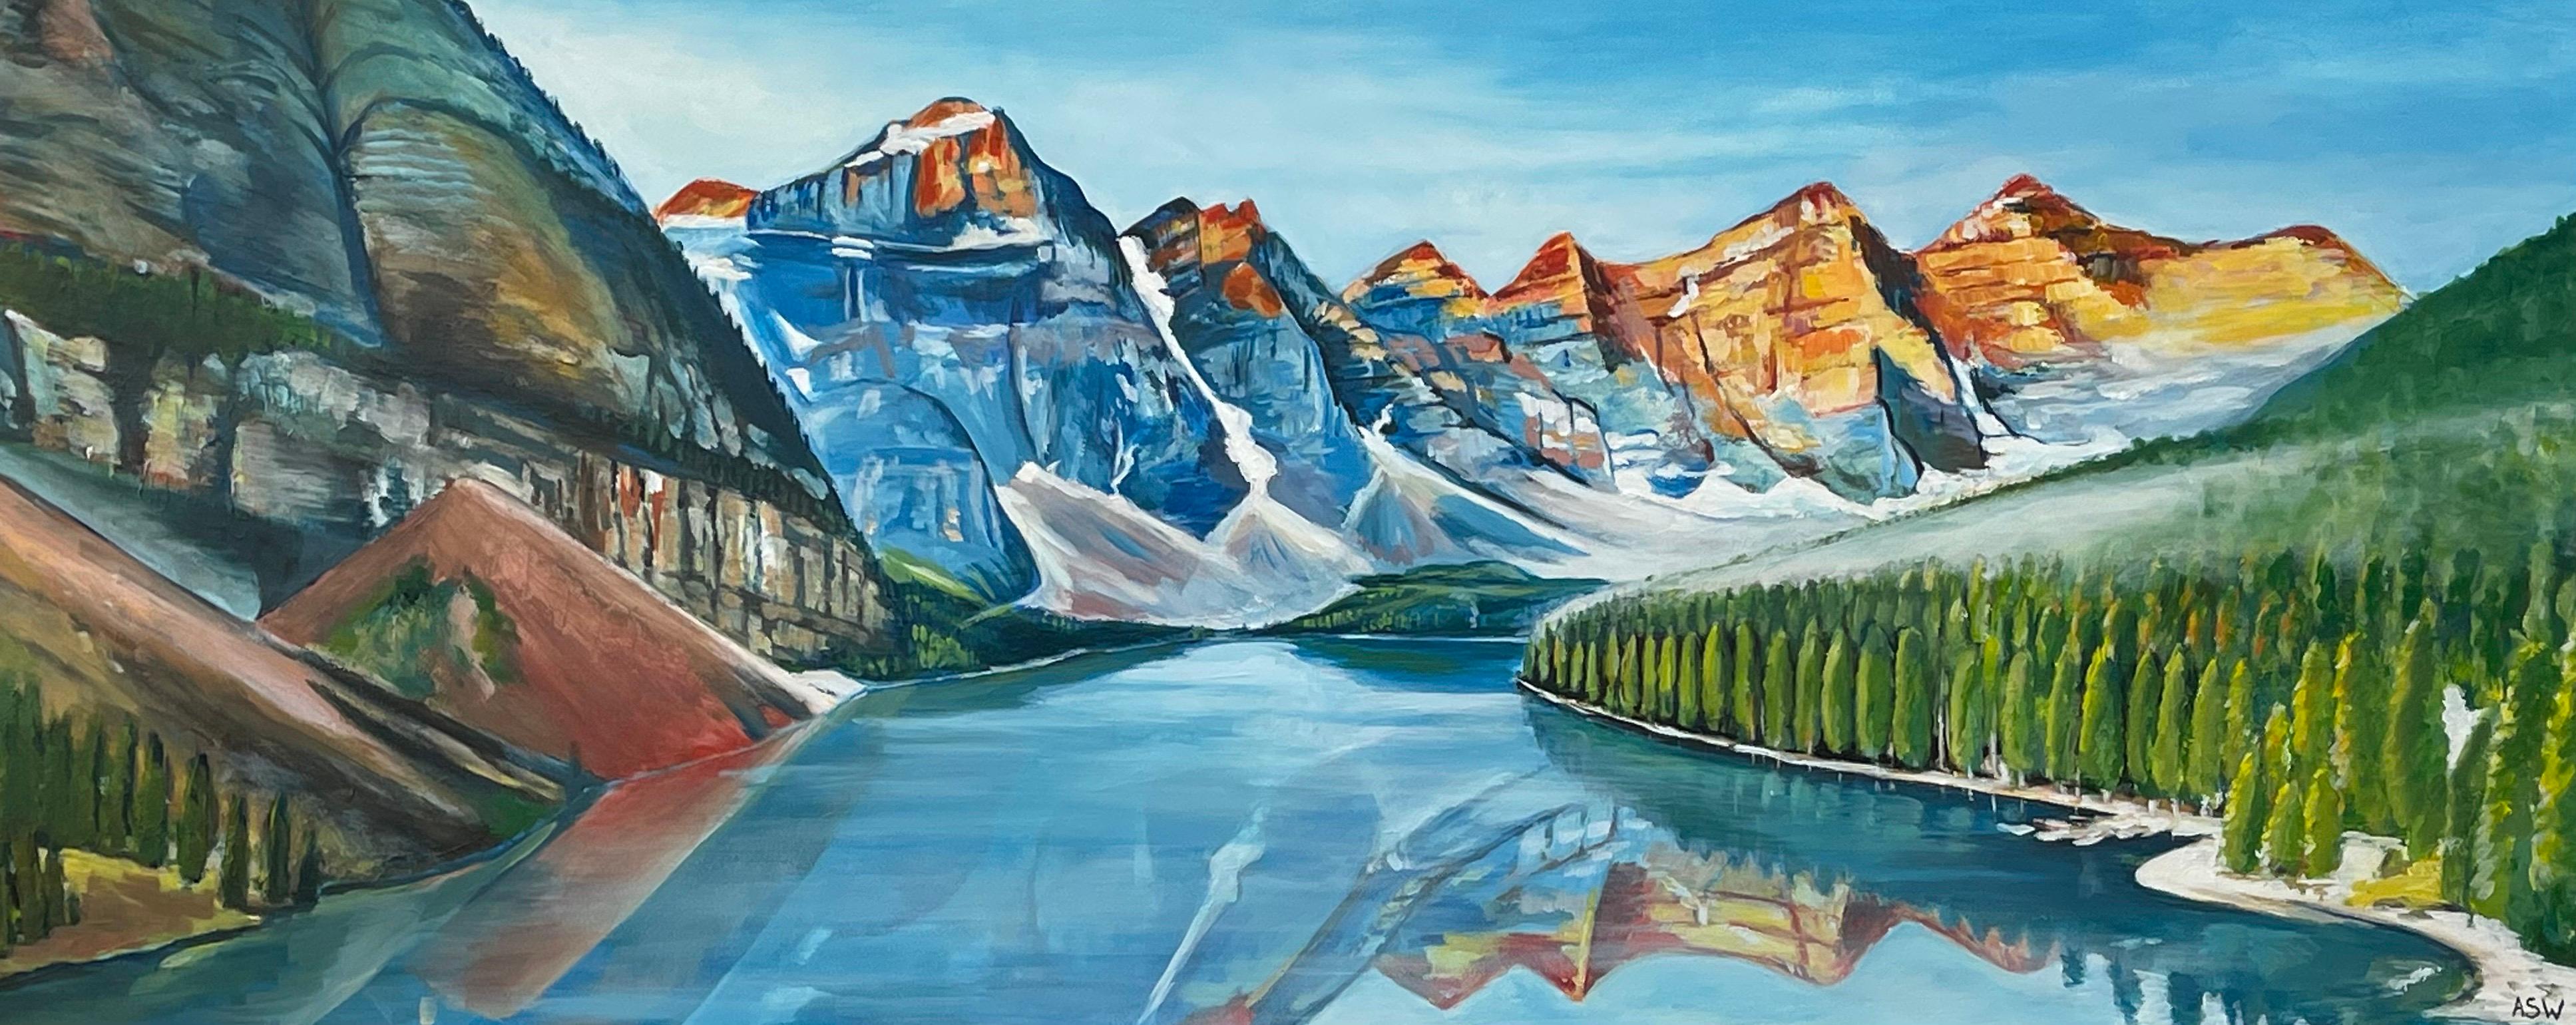 Peinture de paysage moderne du lac Moraine dans le lac Alberta Canada par Artistics Contemporary

L'œuvre d'art mesure 40 x 20 pouces
Le cadre mesure 46 x 26 pouces (encadré dans une moulure blanche moderne de haute qualité). 

Angela Wakefield a